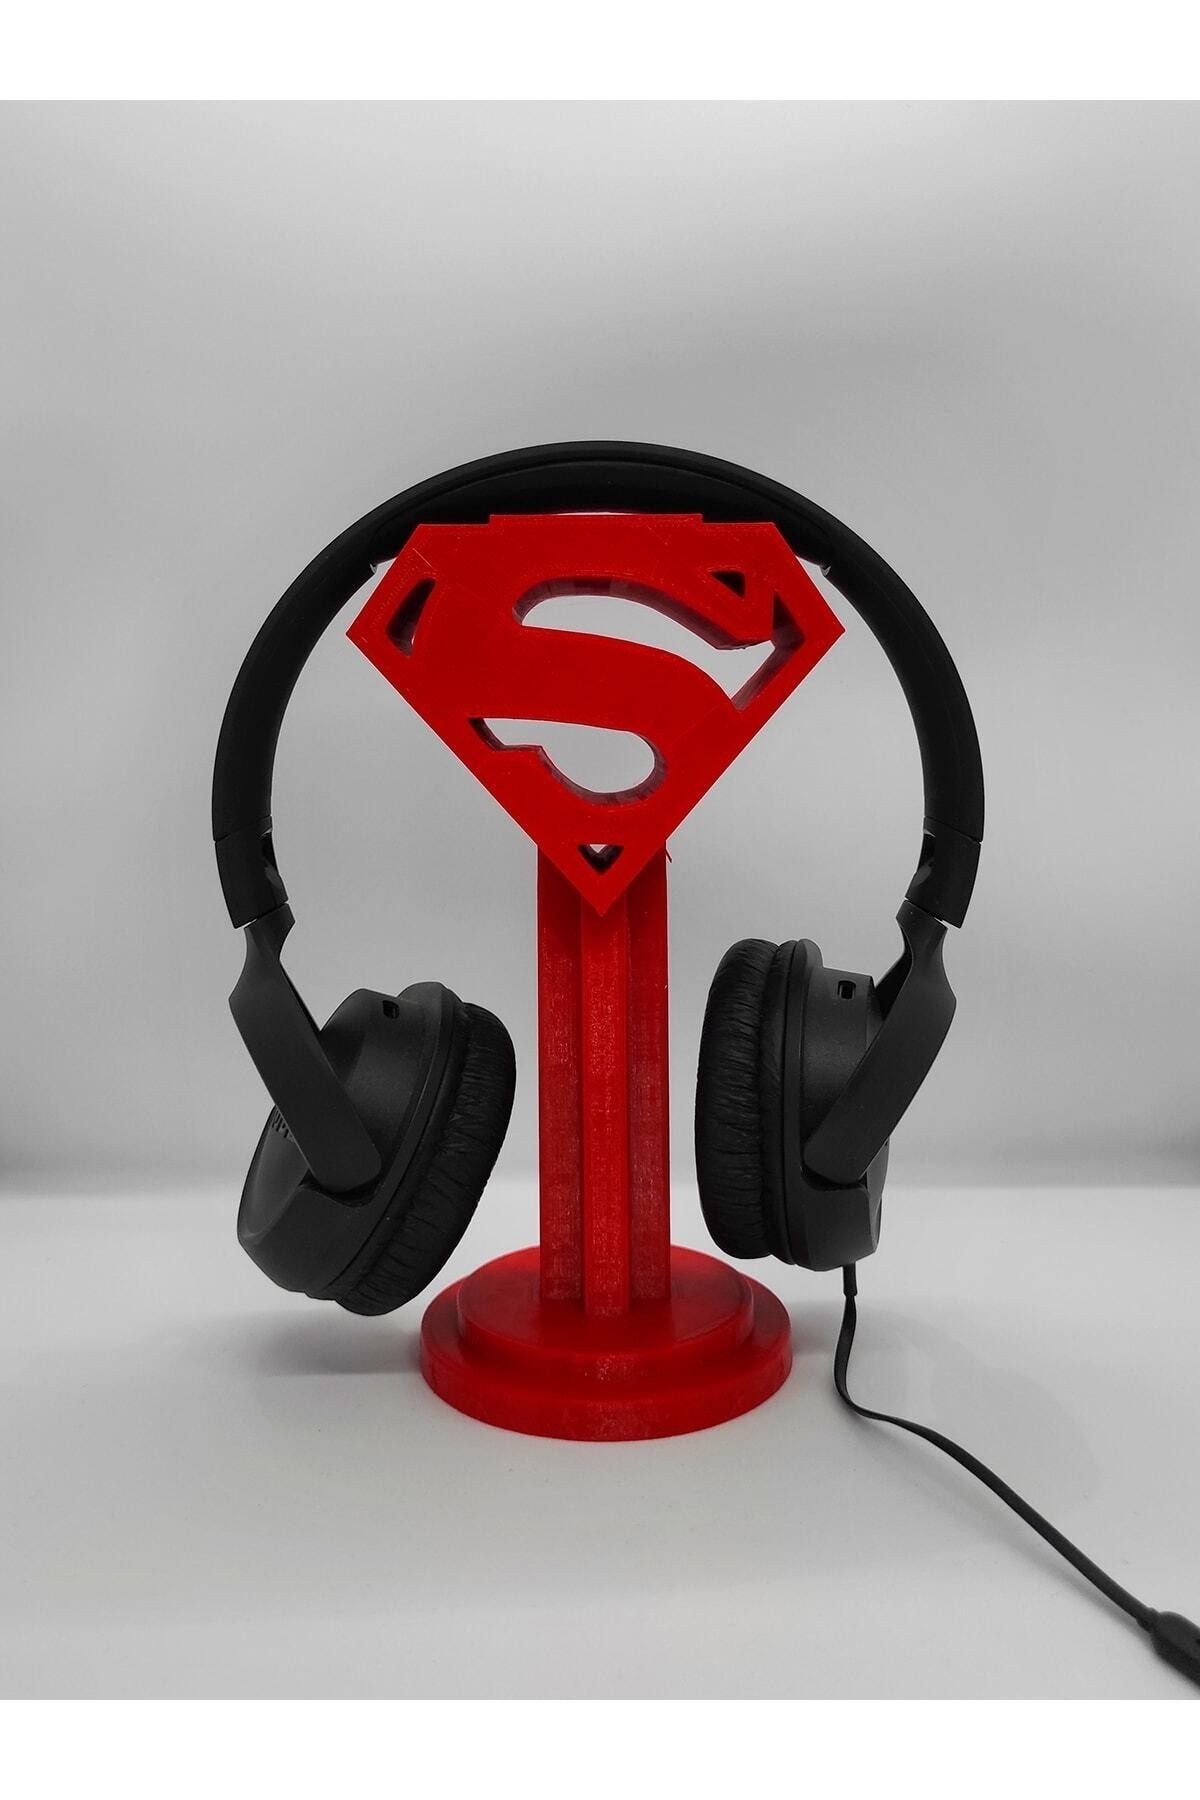 Nerva Design 3D Masaüstü Kulaklık Standı - Kulaklık Tutacağı